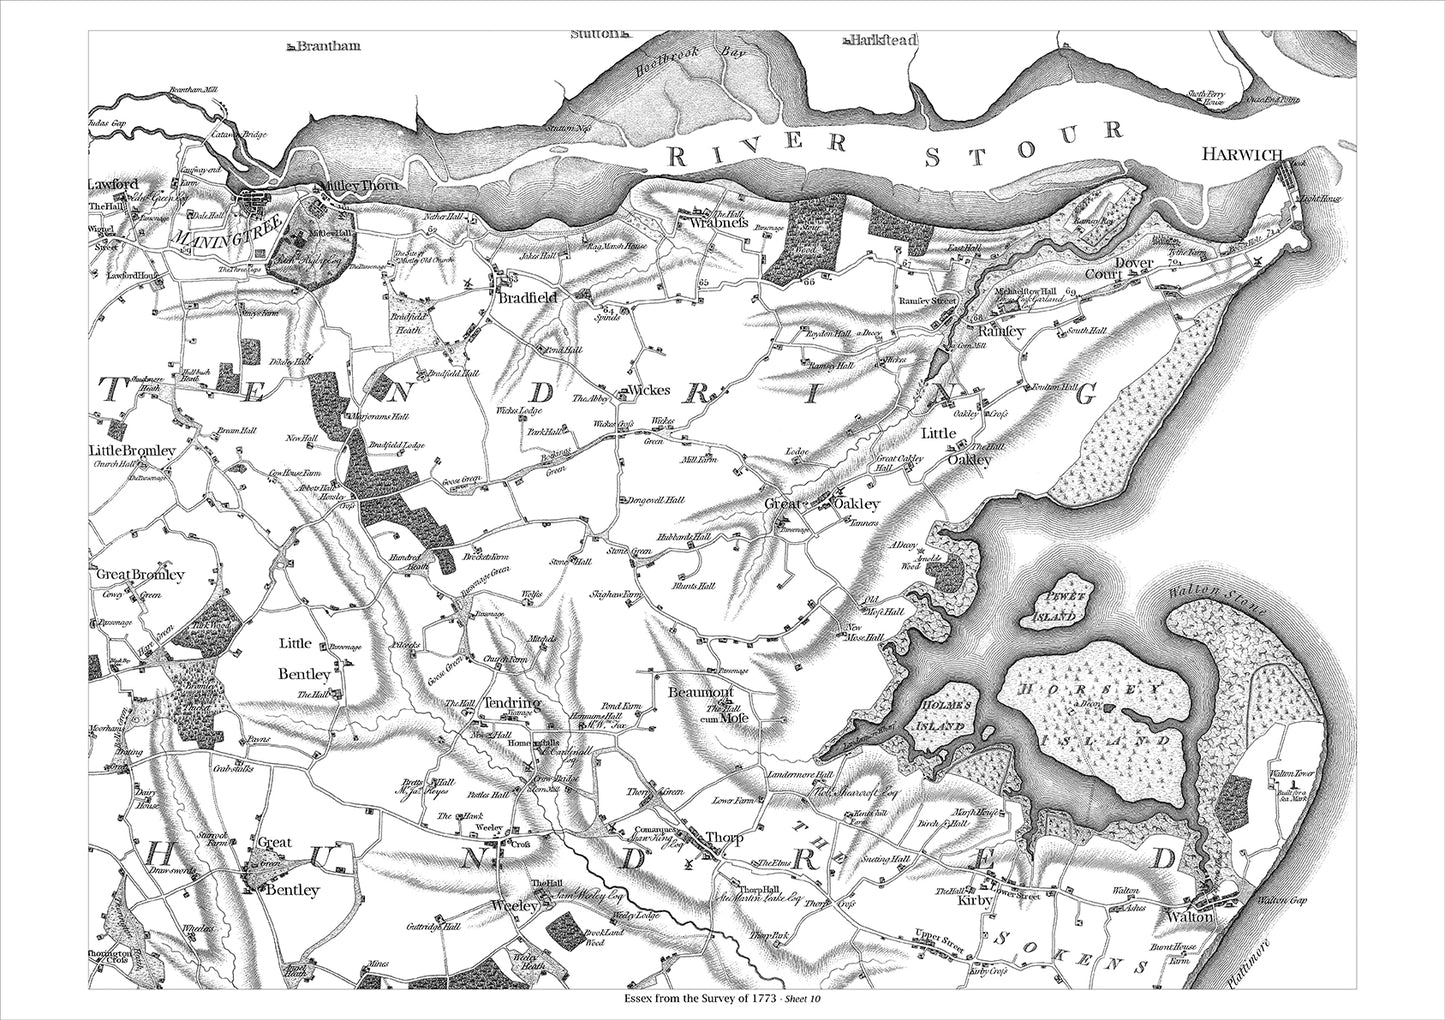 Maningtree, Harwich, Walton, Great Oakley, old map Essex 1777